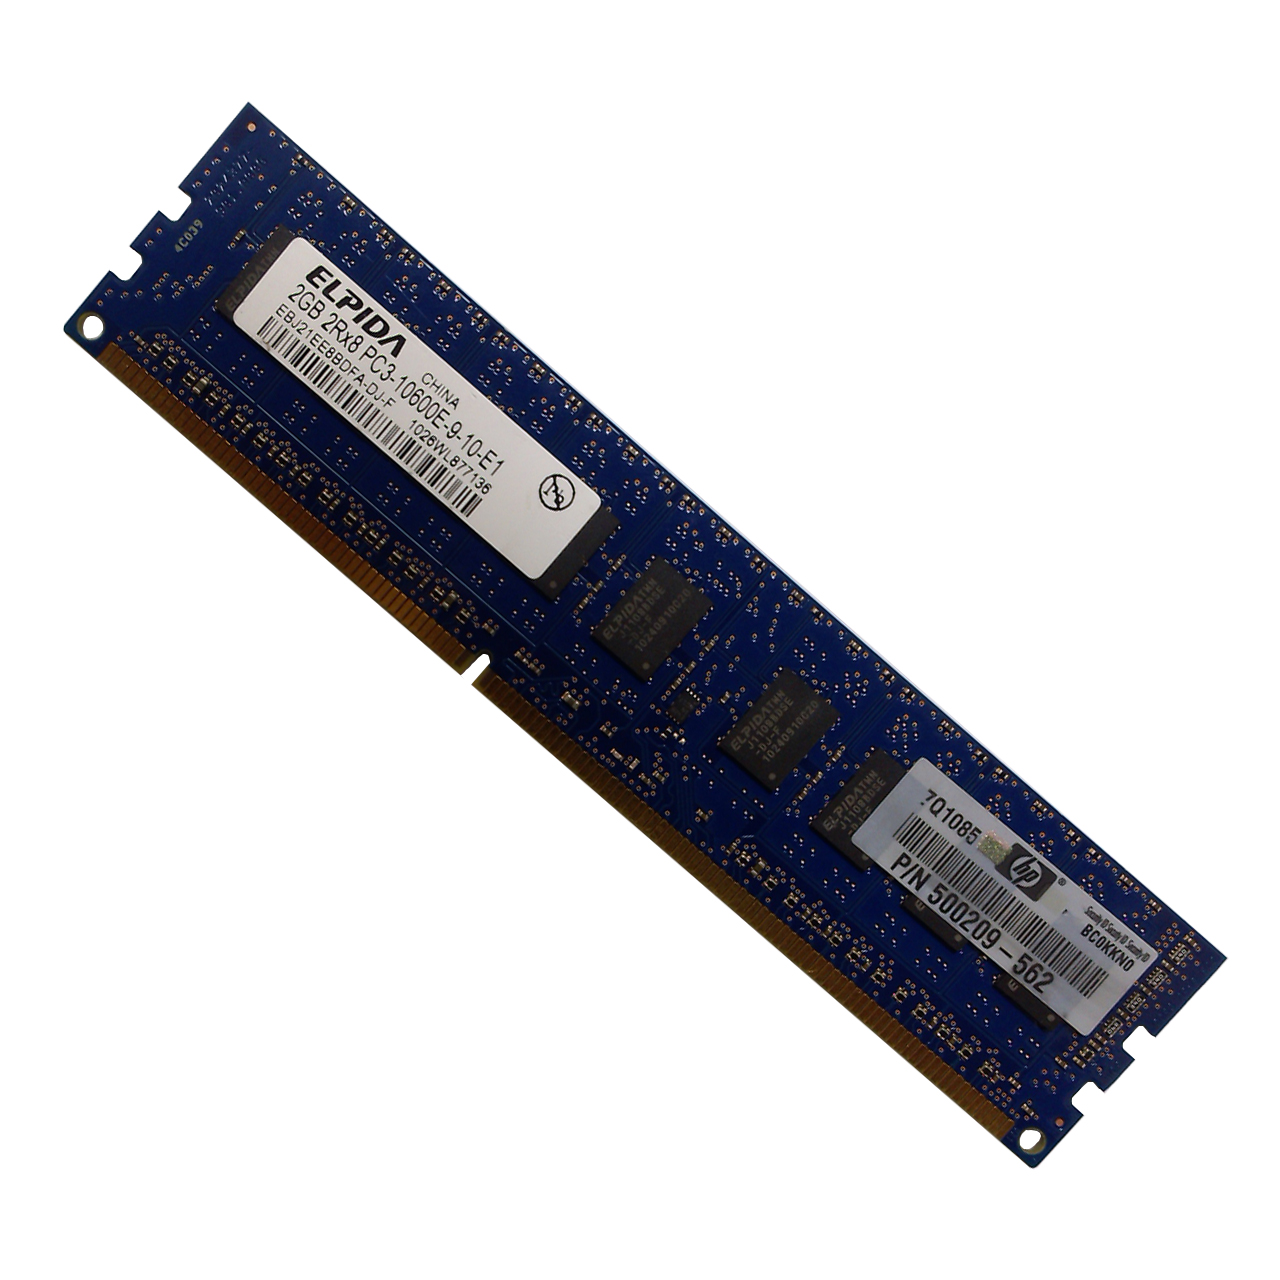 رم کامپیوتر الپیدا مدل DDR3 1333MHz 10600 240Pin ظرفیت 2 گیگابایت